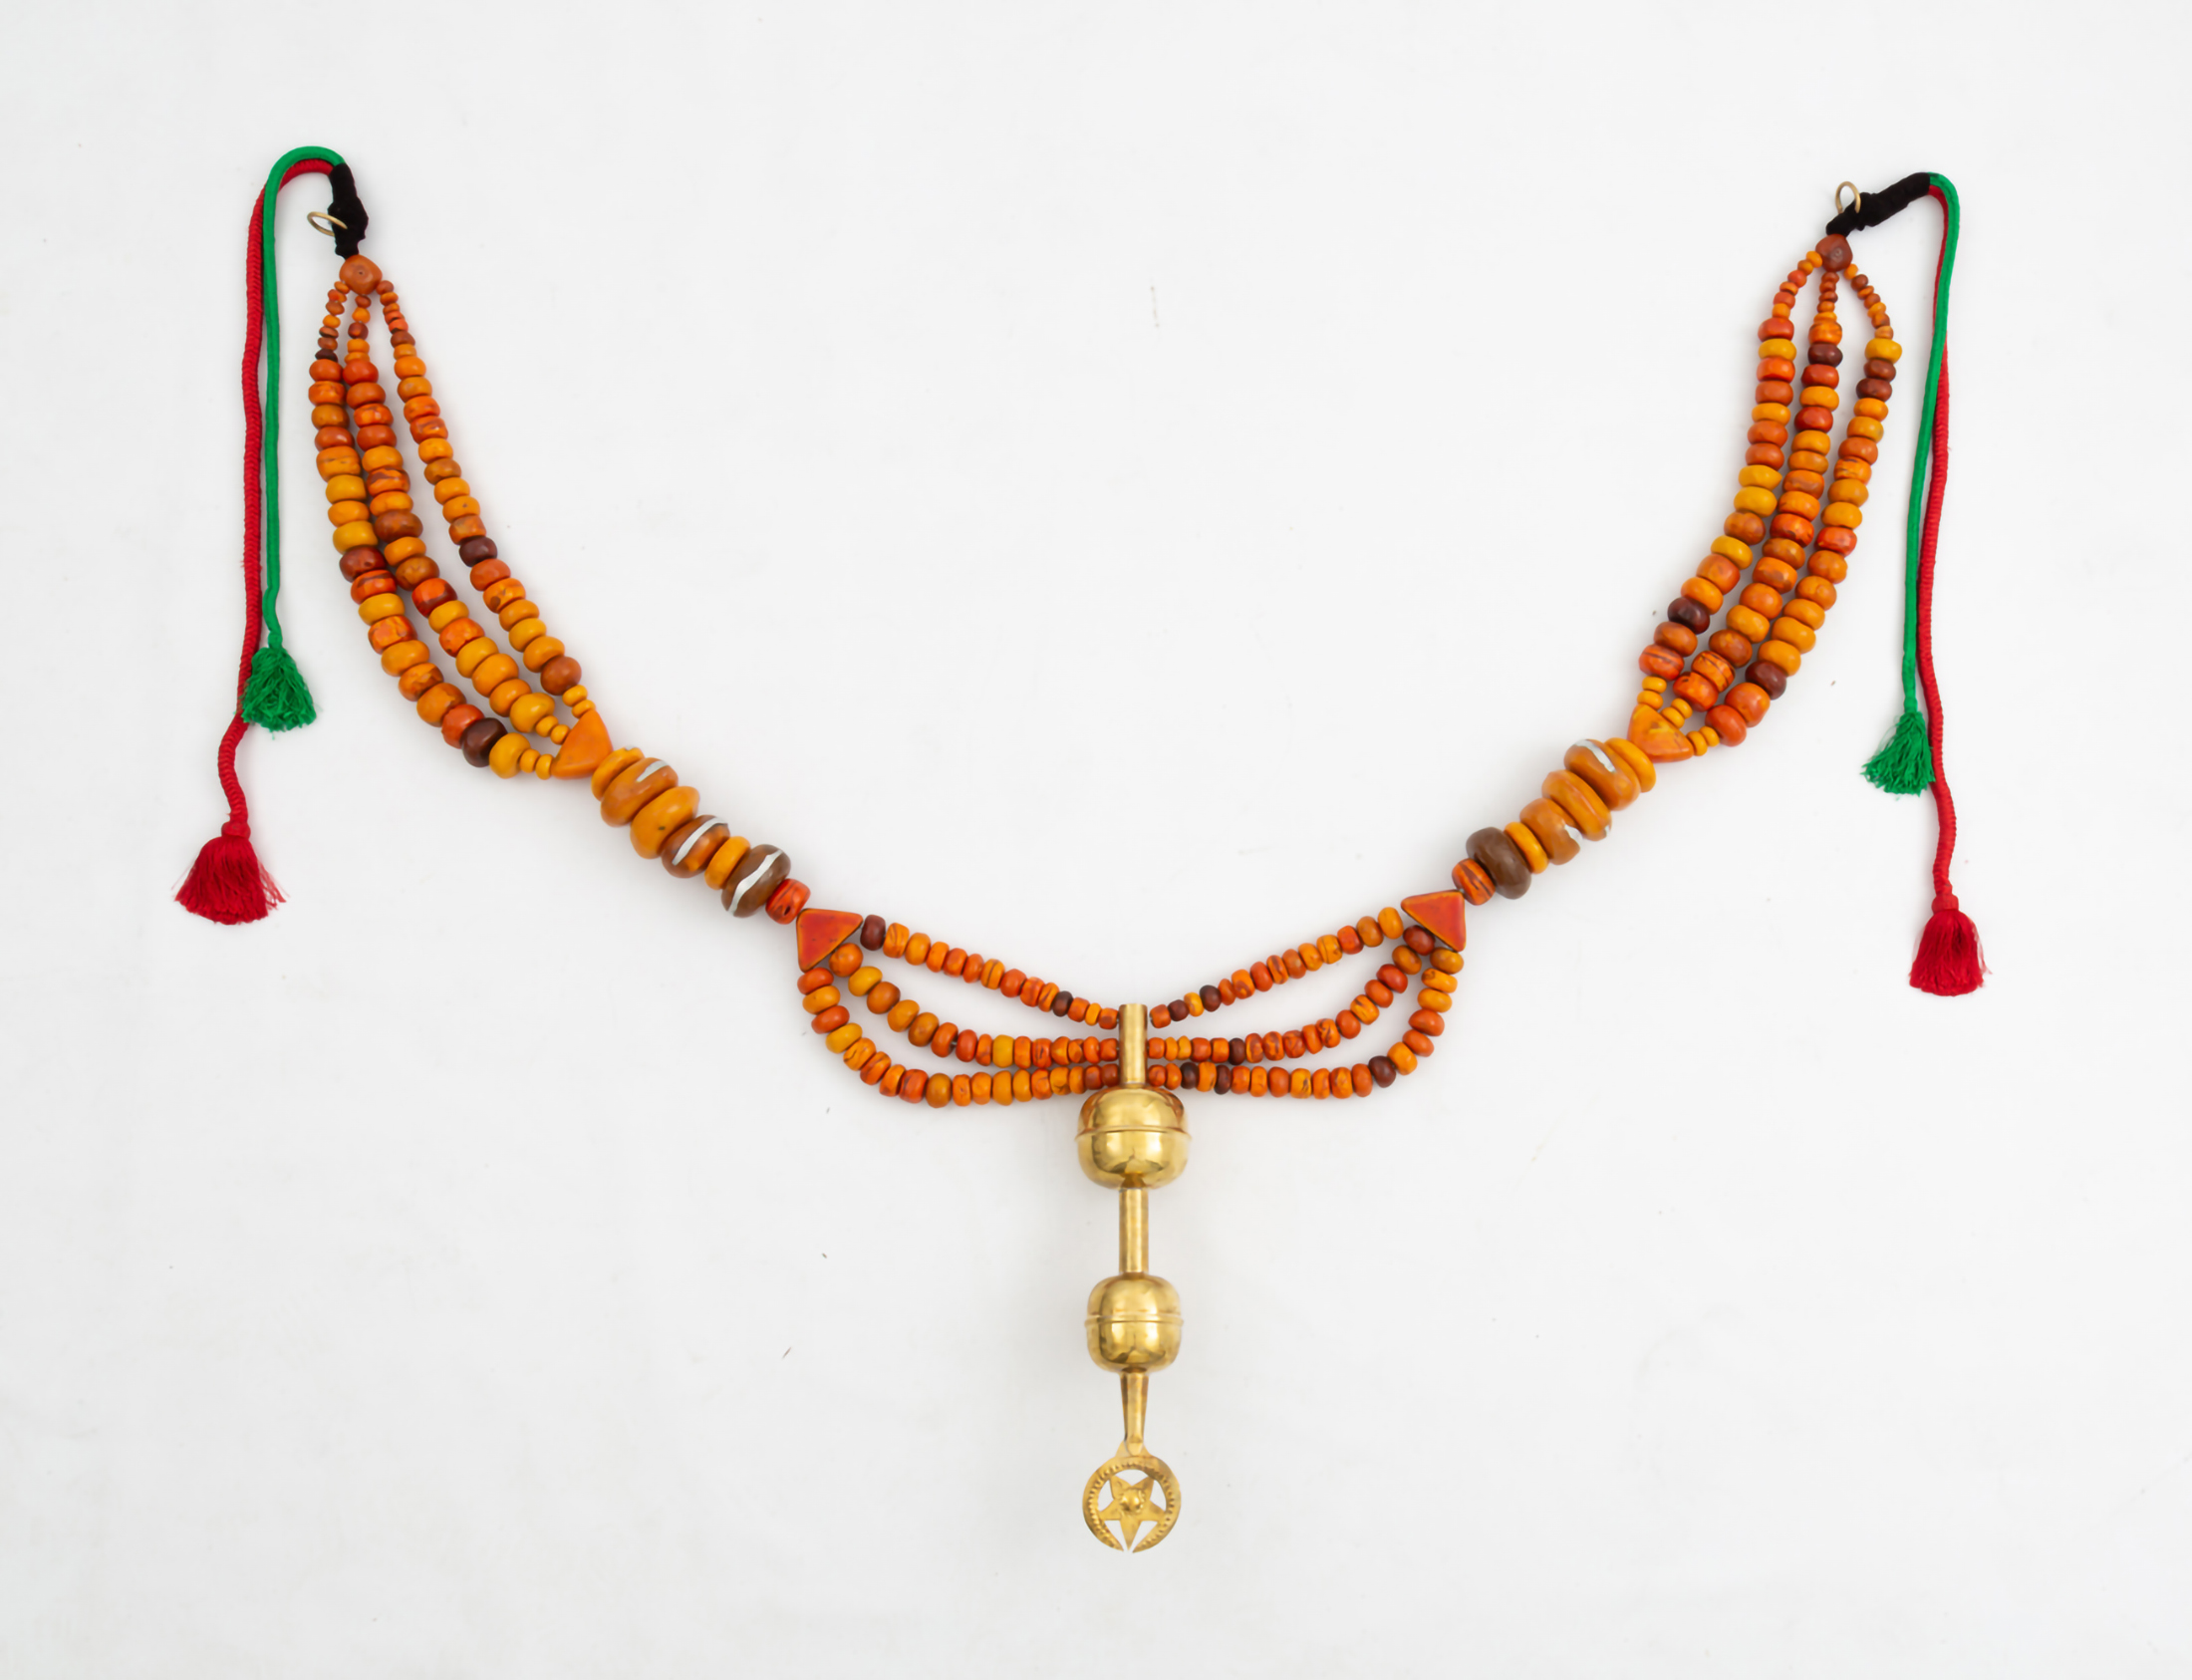 MOHAMED AREJDAL (Né en 1984) Légende à l’envers II, 2019 Perles Amazigh en résine, bijoux en argent, cable acier, laine et patères en cuivre 100 x 130 x 14 cm